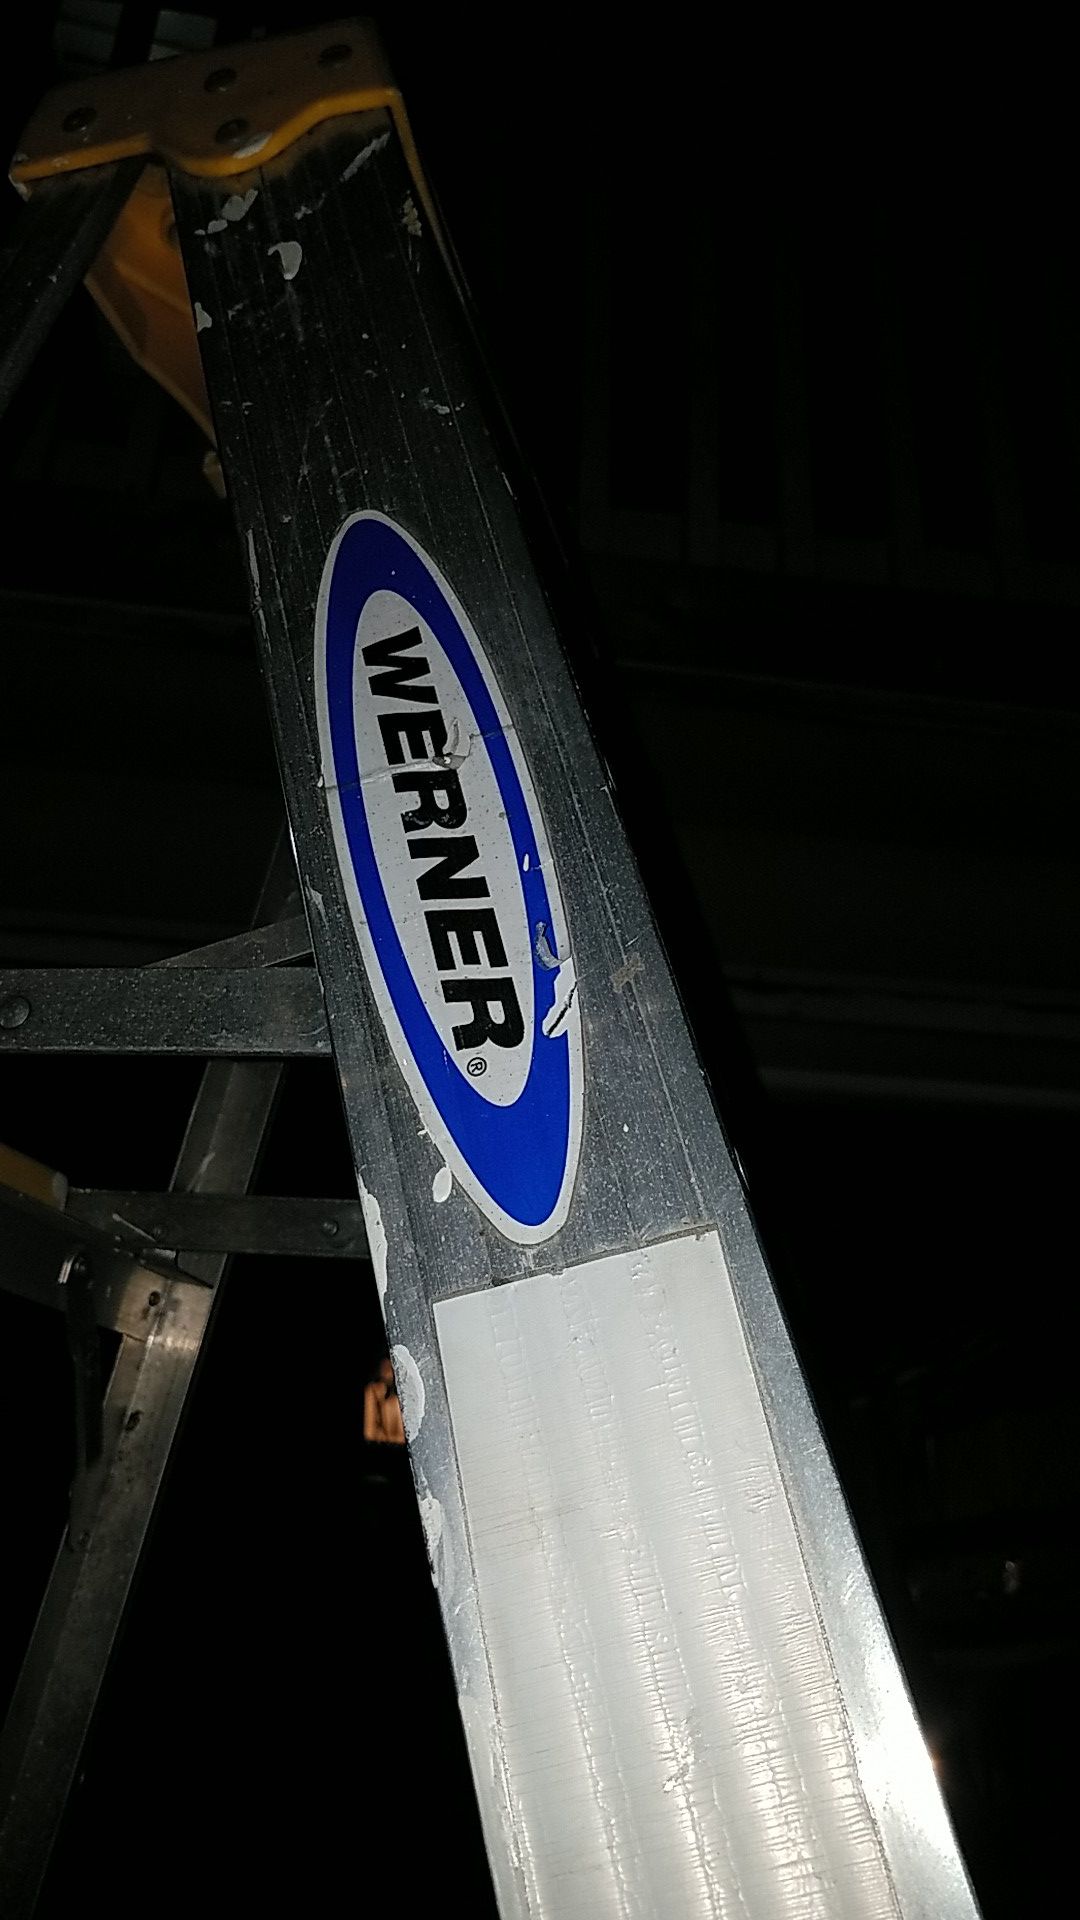 Werner 8 foot aluminum ladder